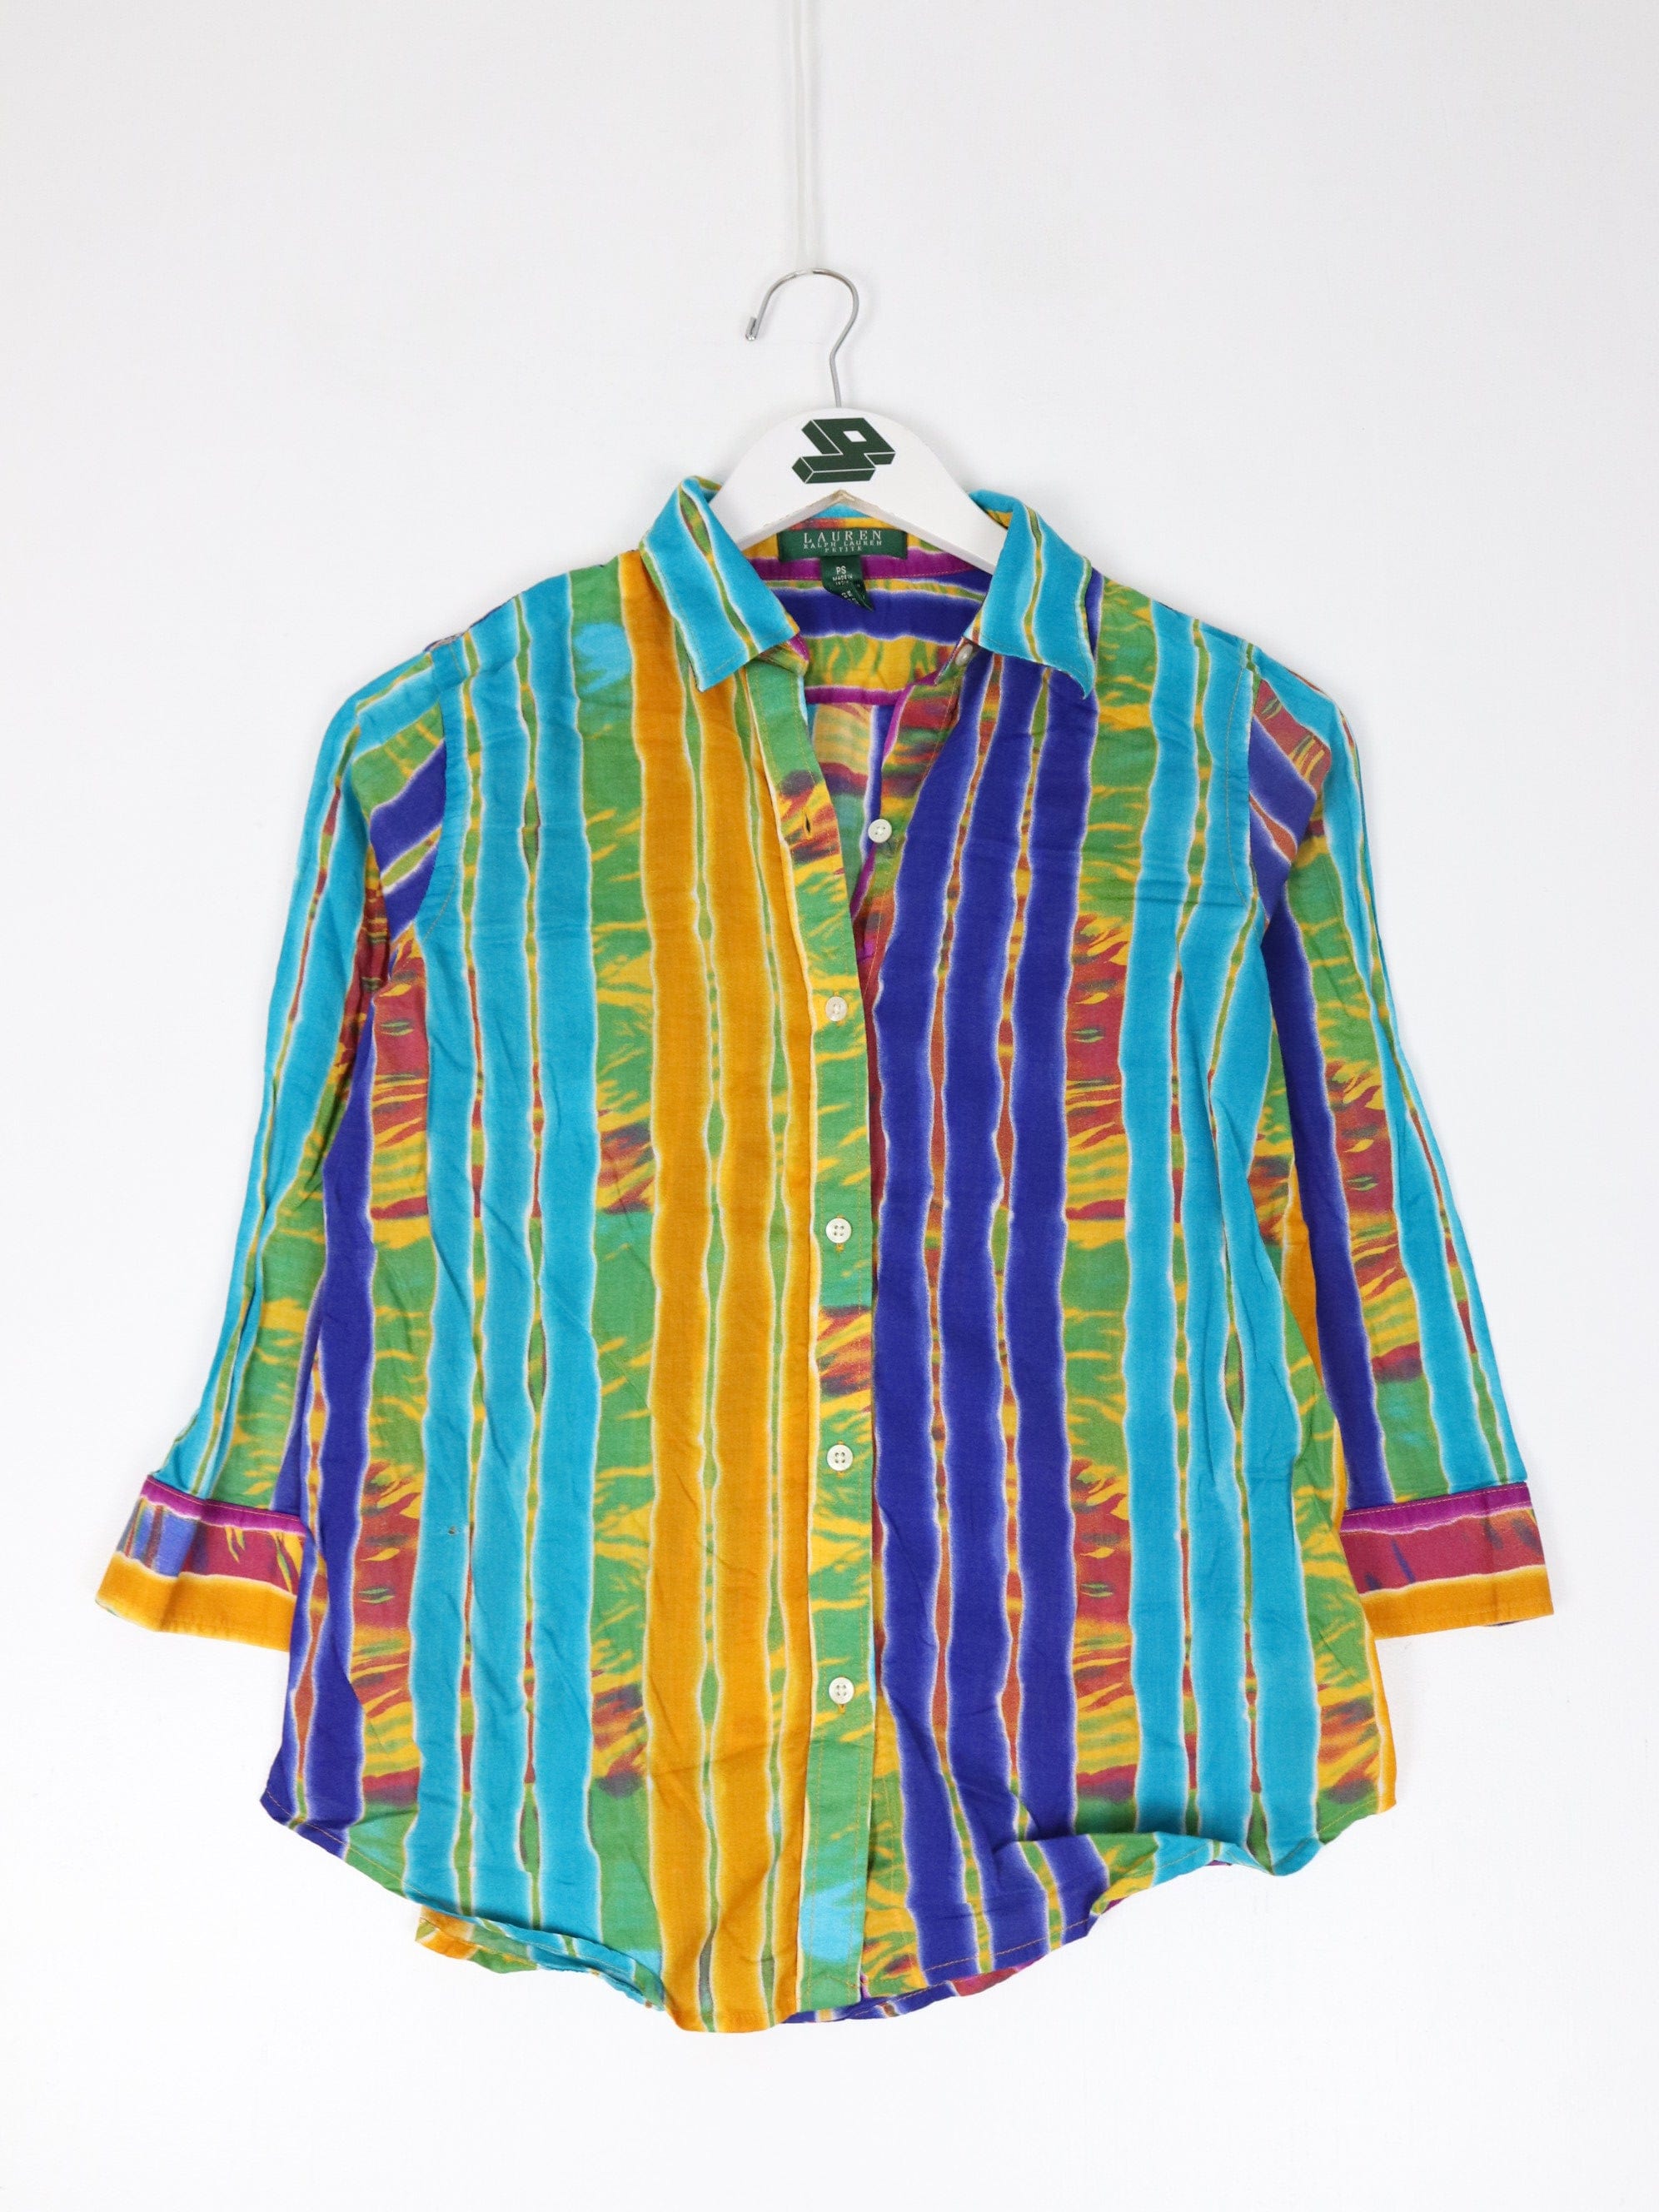 http://propervintagecanada.com/cdn/shop/files/other-button-up-shirts-lauren-ralph-lauren-shirt-womens-small-blue-striped-pattern-button-up-31683412361275.jpg?v=1700781789